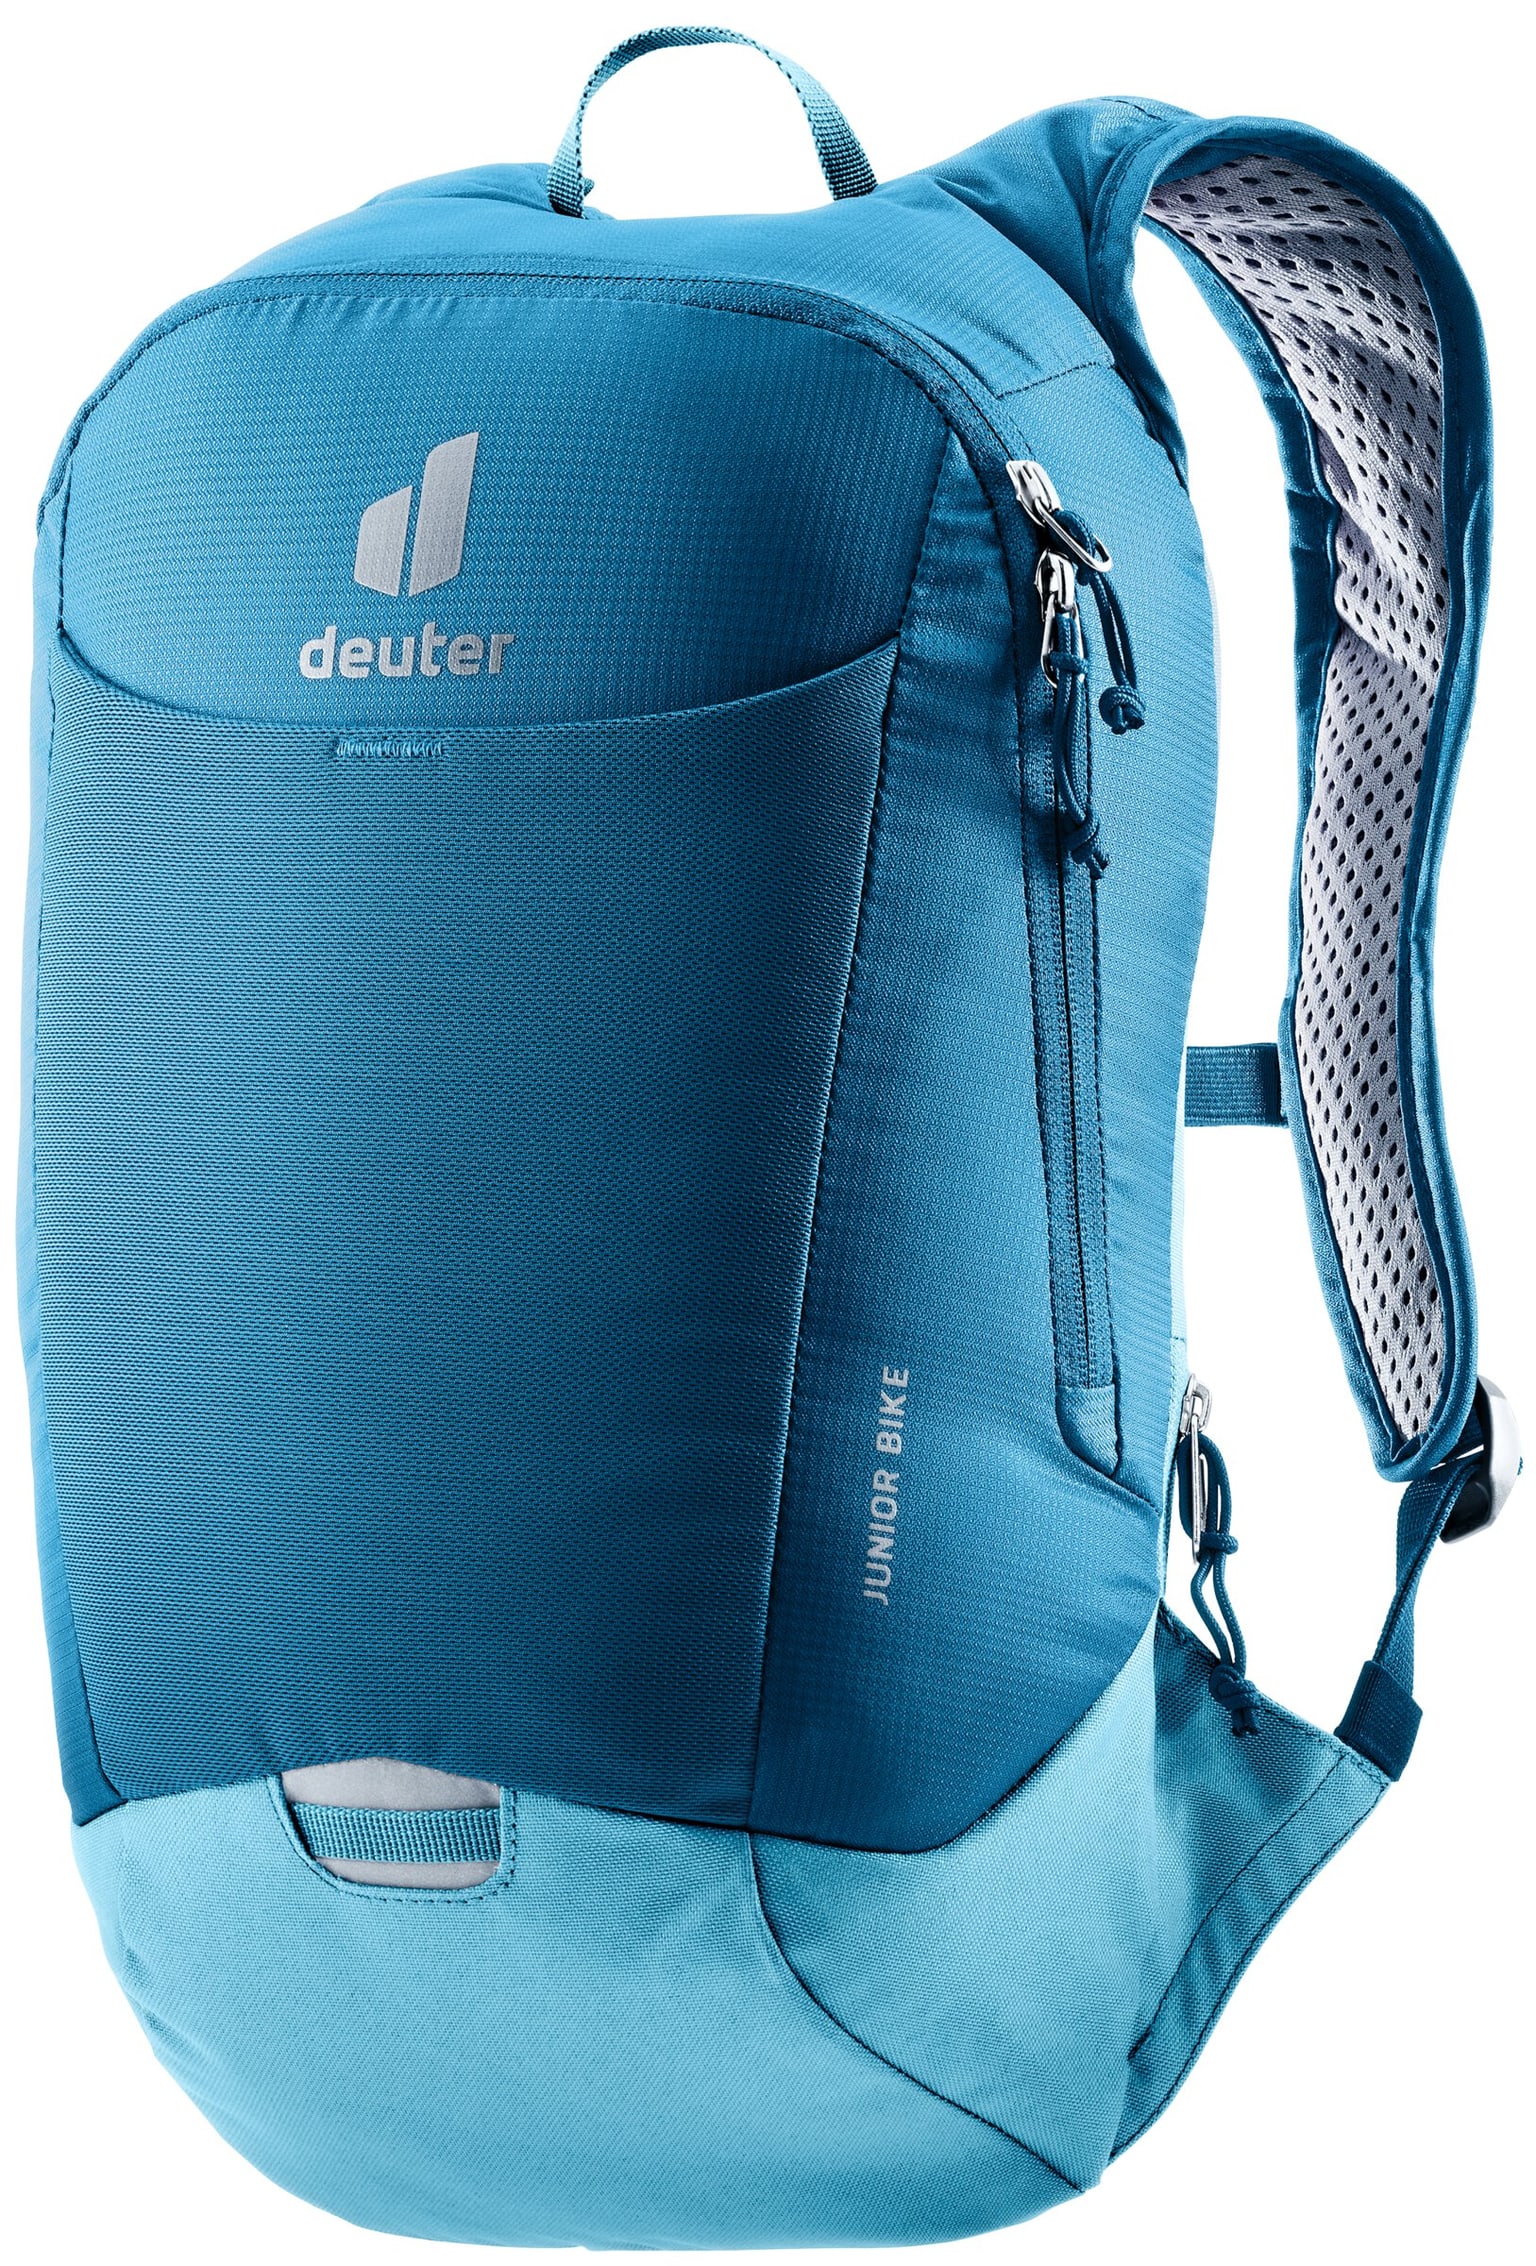 Deuter Deuter Junior Bike Bikerucksack blau 1